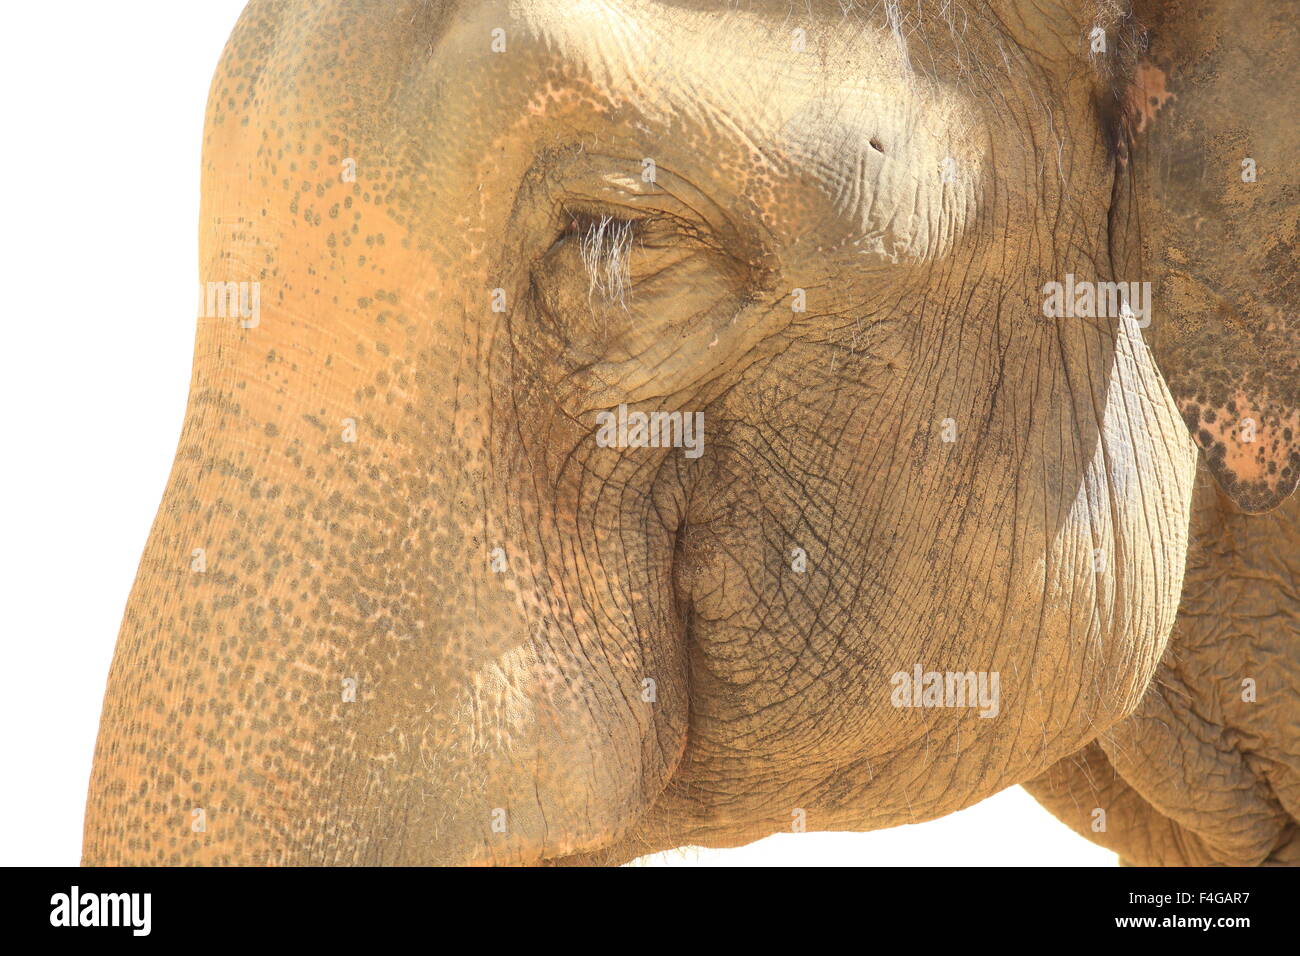 Indian elephant (Elephas maximus indicus) Stock Photo